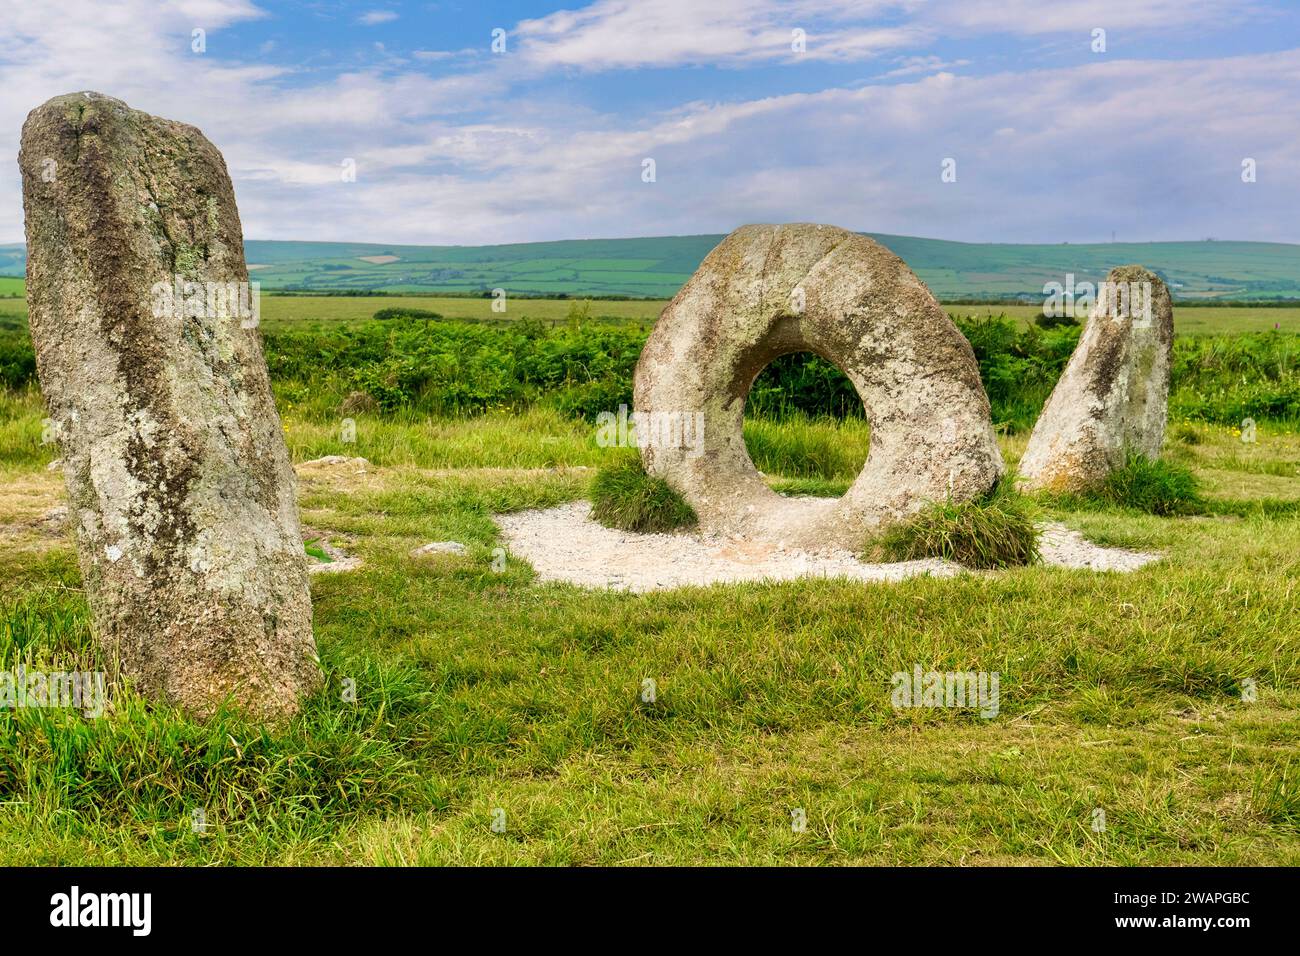 Men-an-Tol, anciennes pierres debout près de Penzance, Cornouailles, Royaume-Uni Banque D'Images